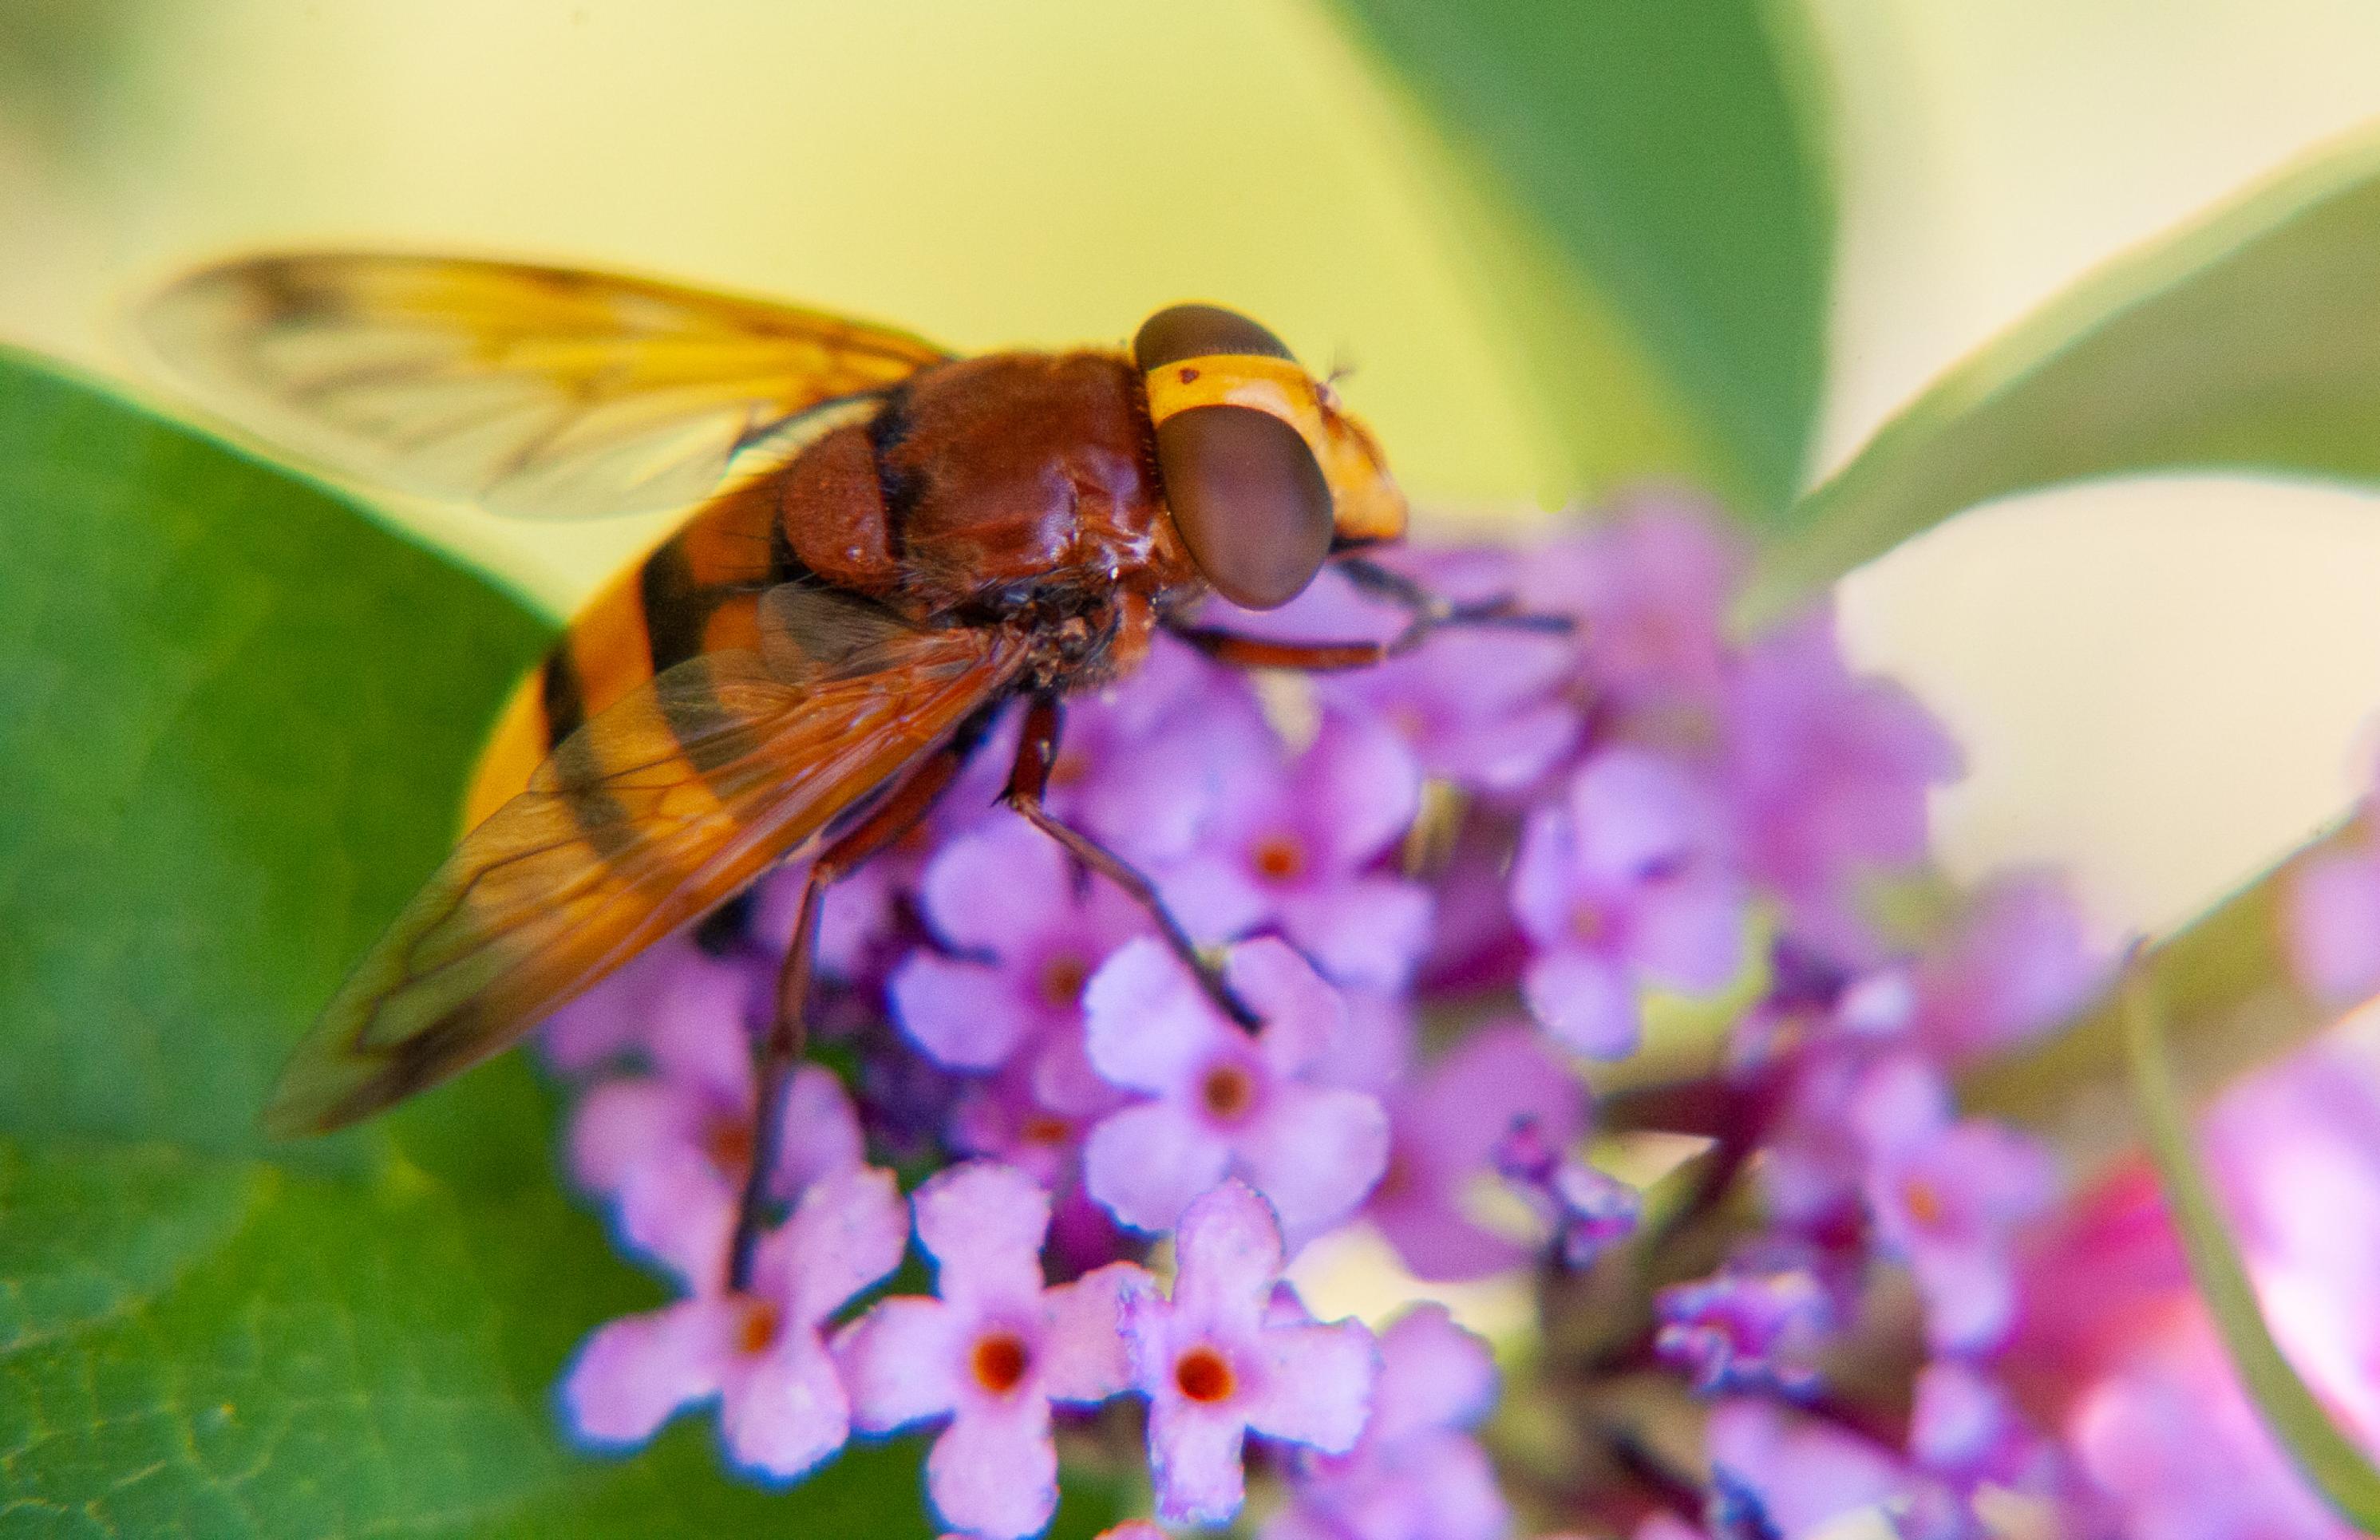 Ein großes, orange-braunes Insekte sitzt auf einer rosafarbenen Blüte.